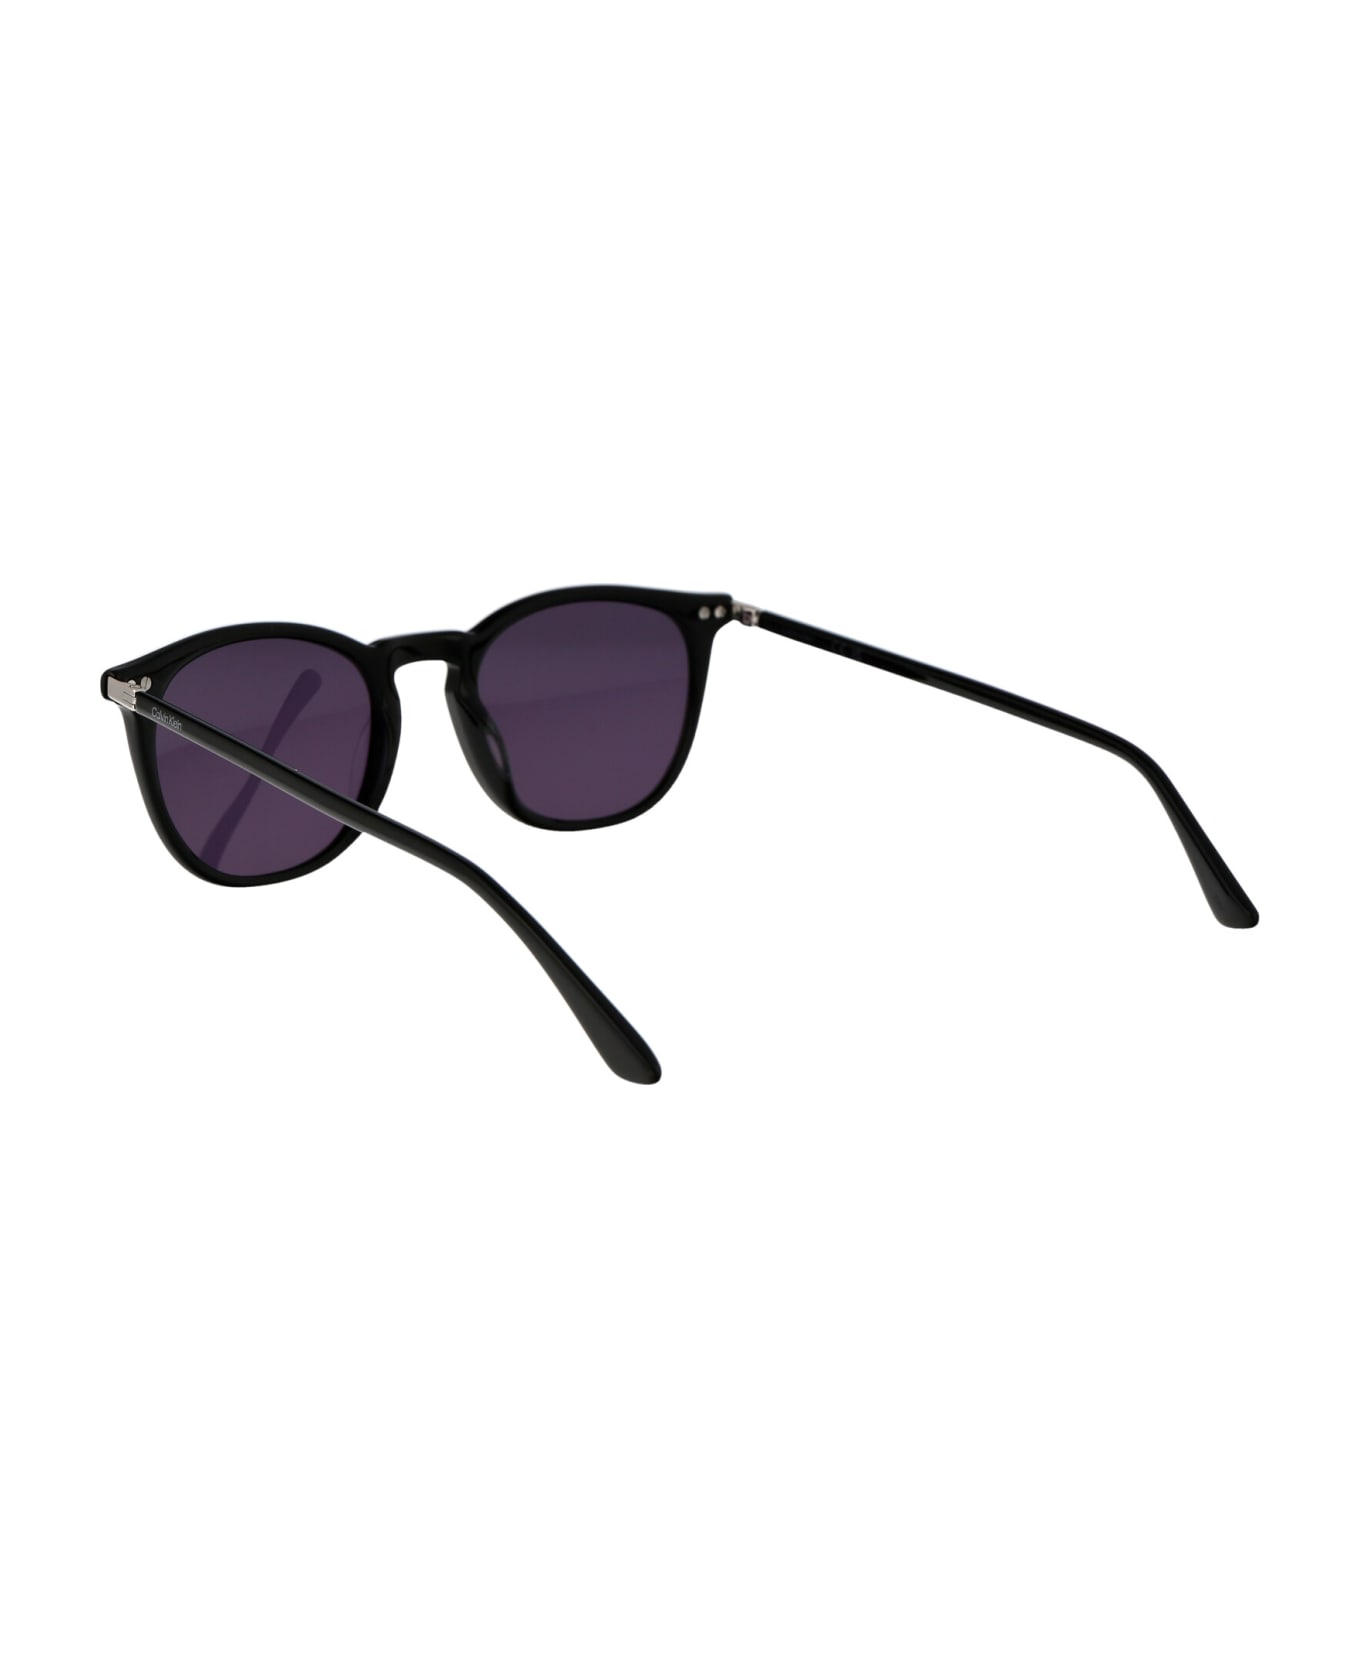 Calvin Klein Ck22533s Sunglasses - 001 BLACK サングラス